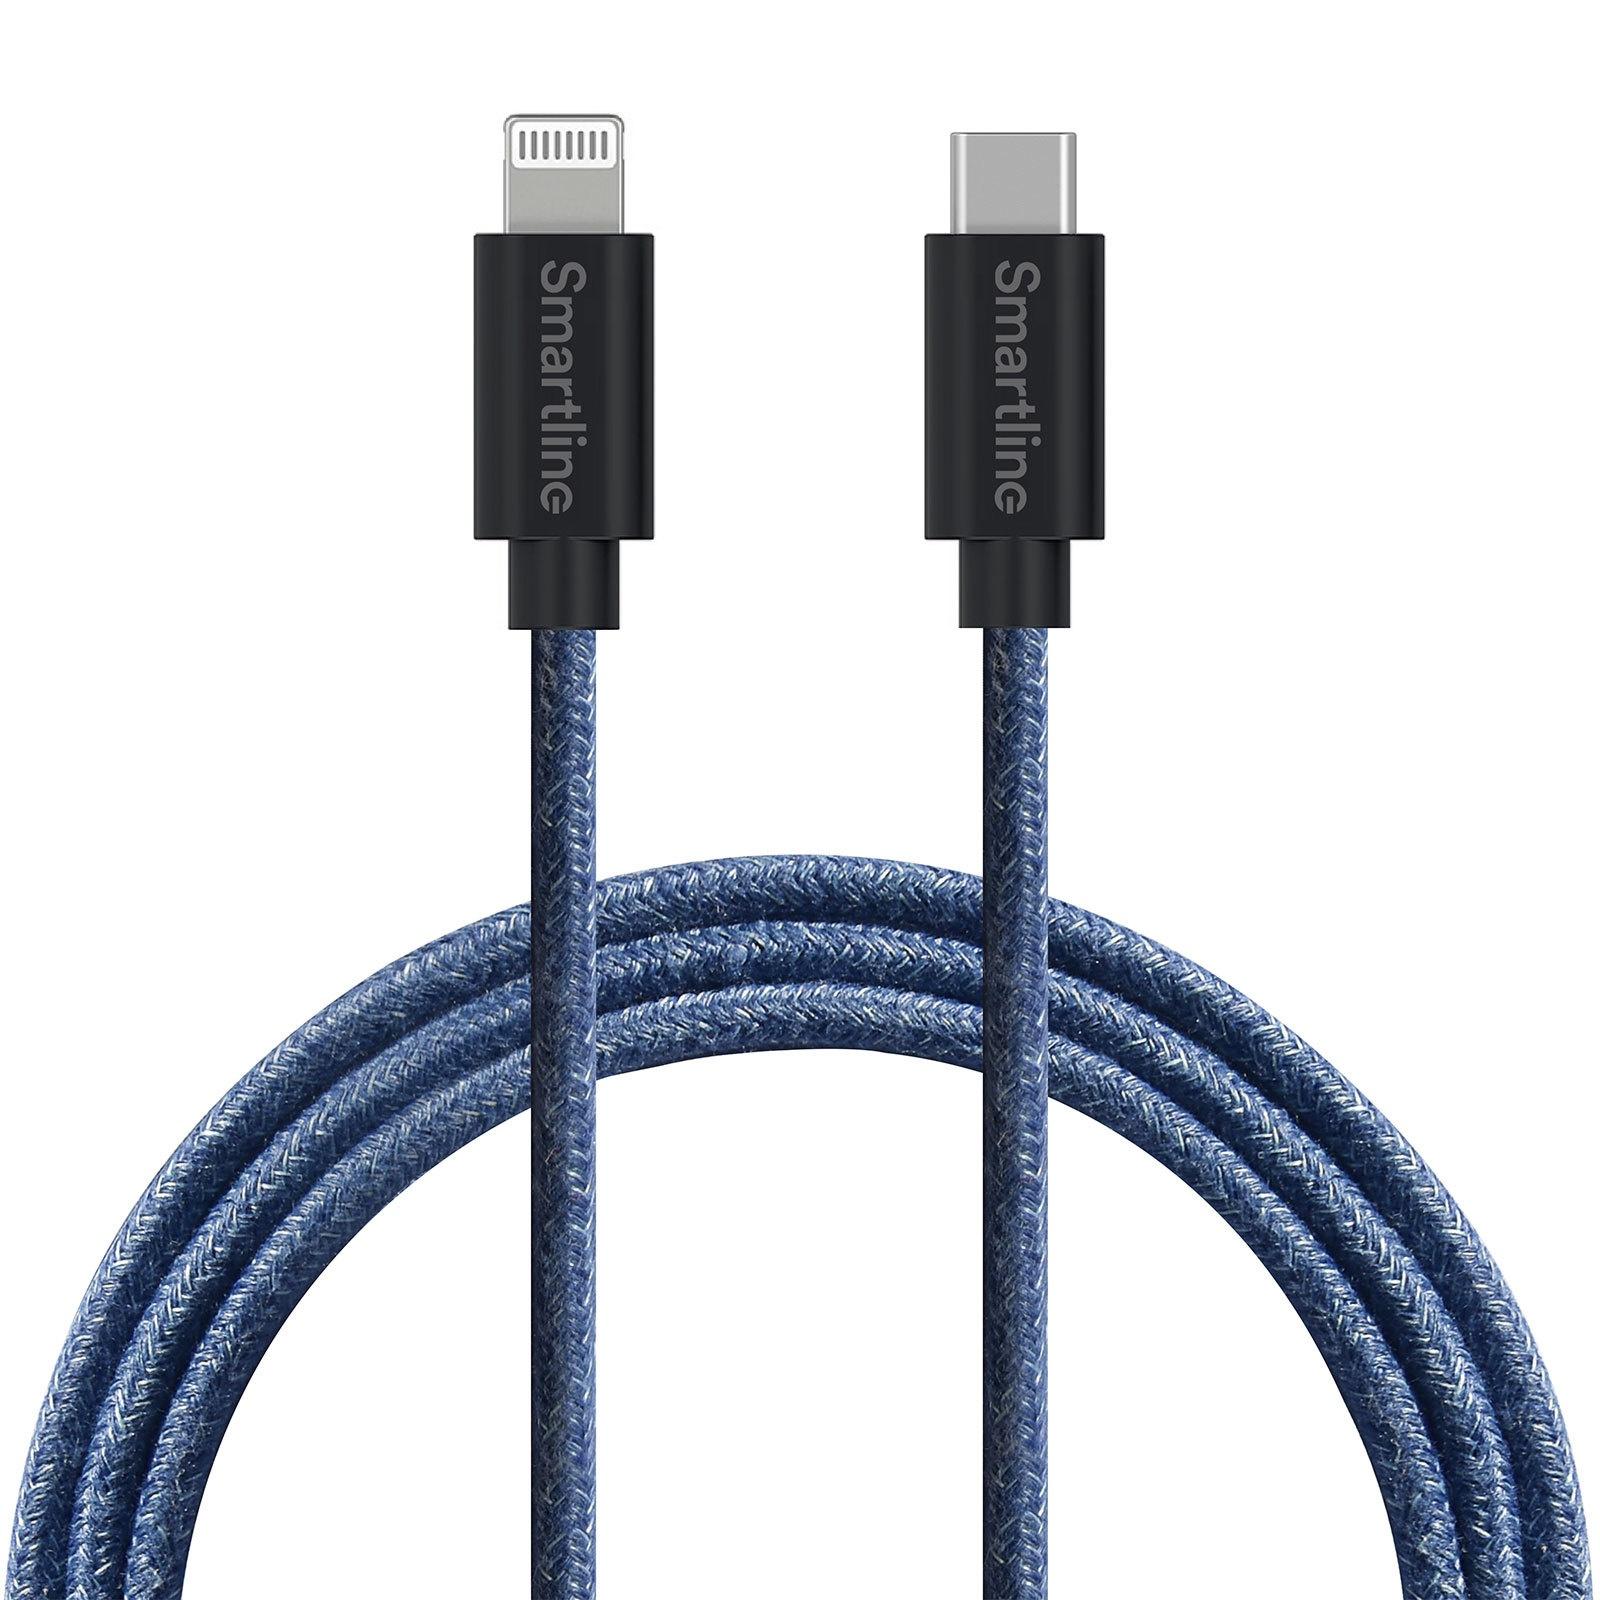 Fuzzy USB-kabel USB-C -> Lightning 2m Lightning Blauw